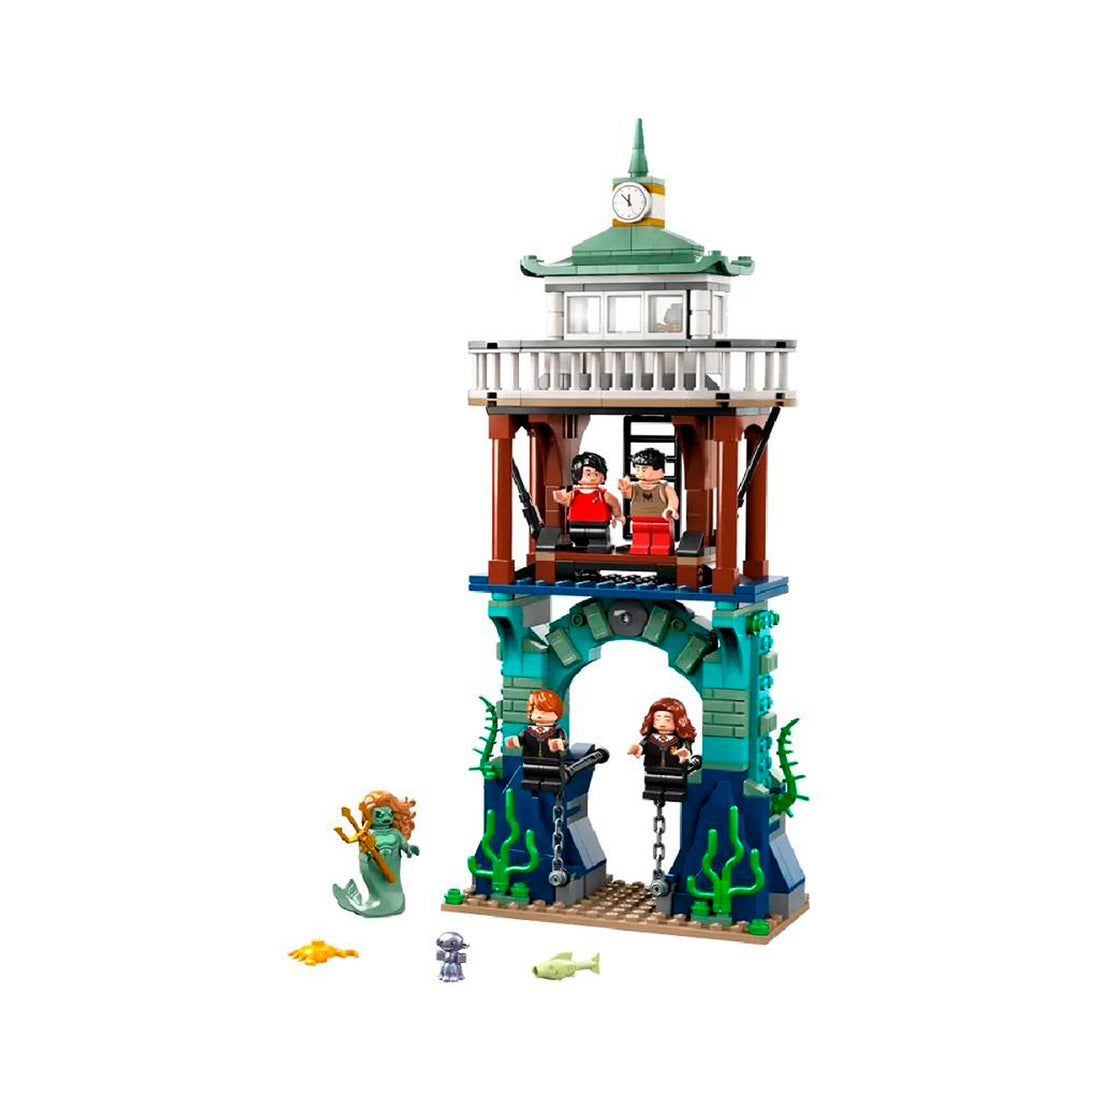 Lego Harry Potter - Torneio Tribuxo: O Lago Negro